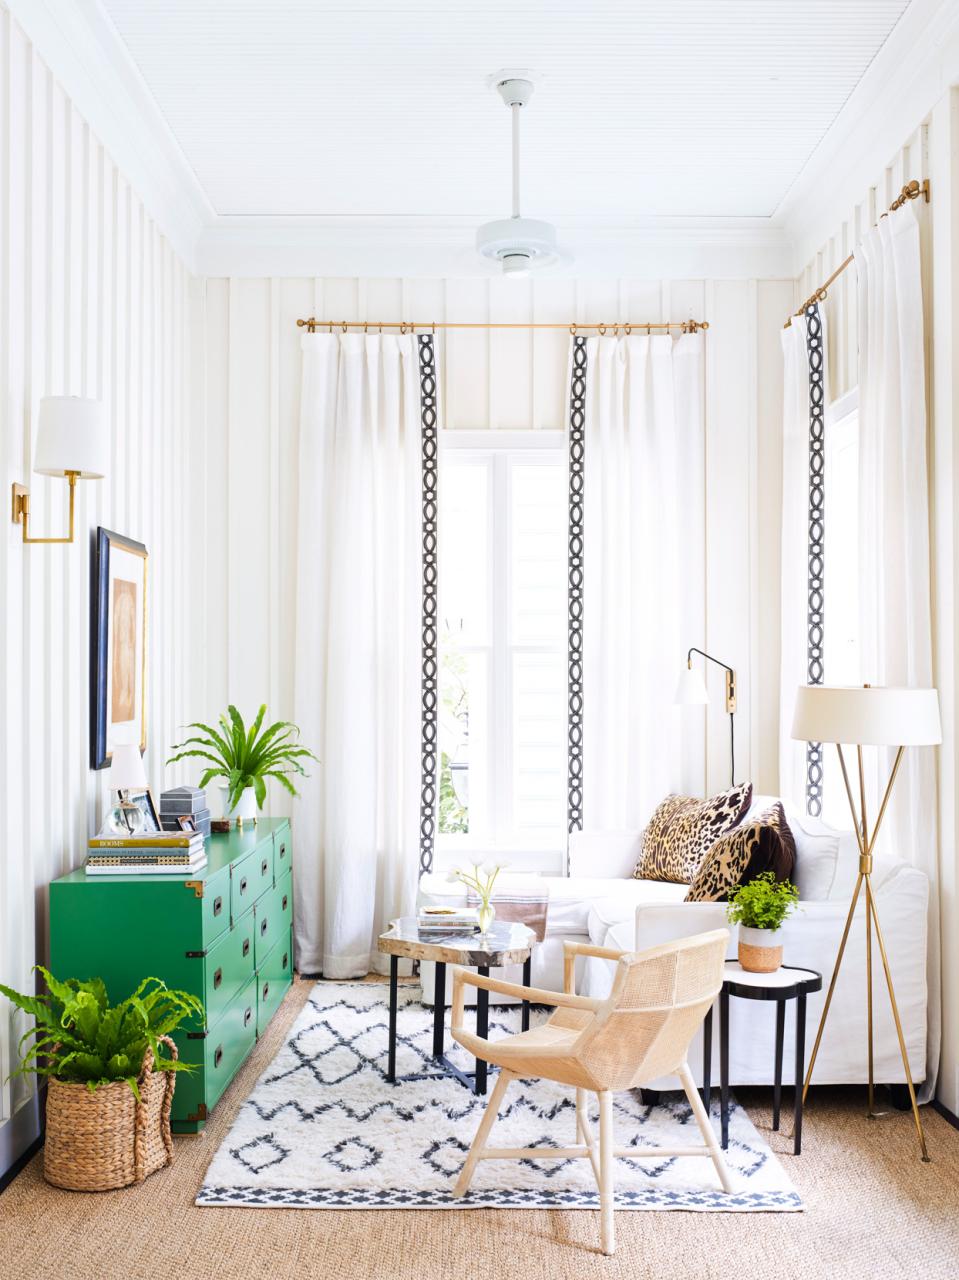 Sử dụng rèm cửa cao để "ăn gian" không gian khi thiết kế phòng khách nhỏ